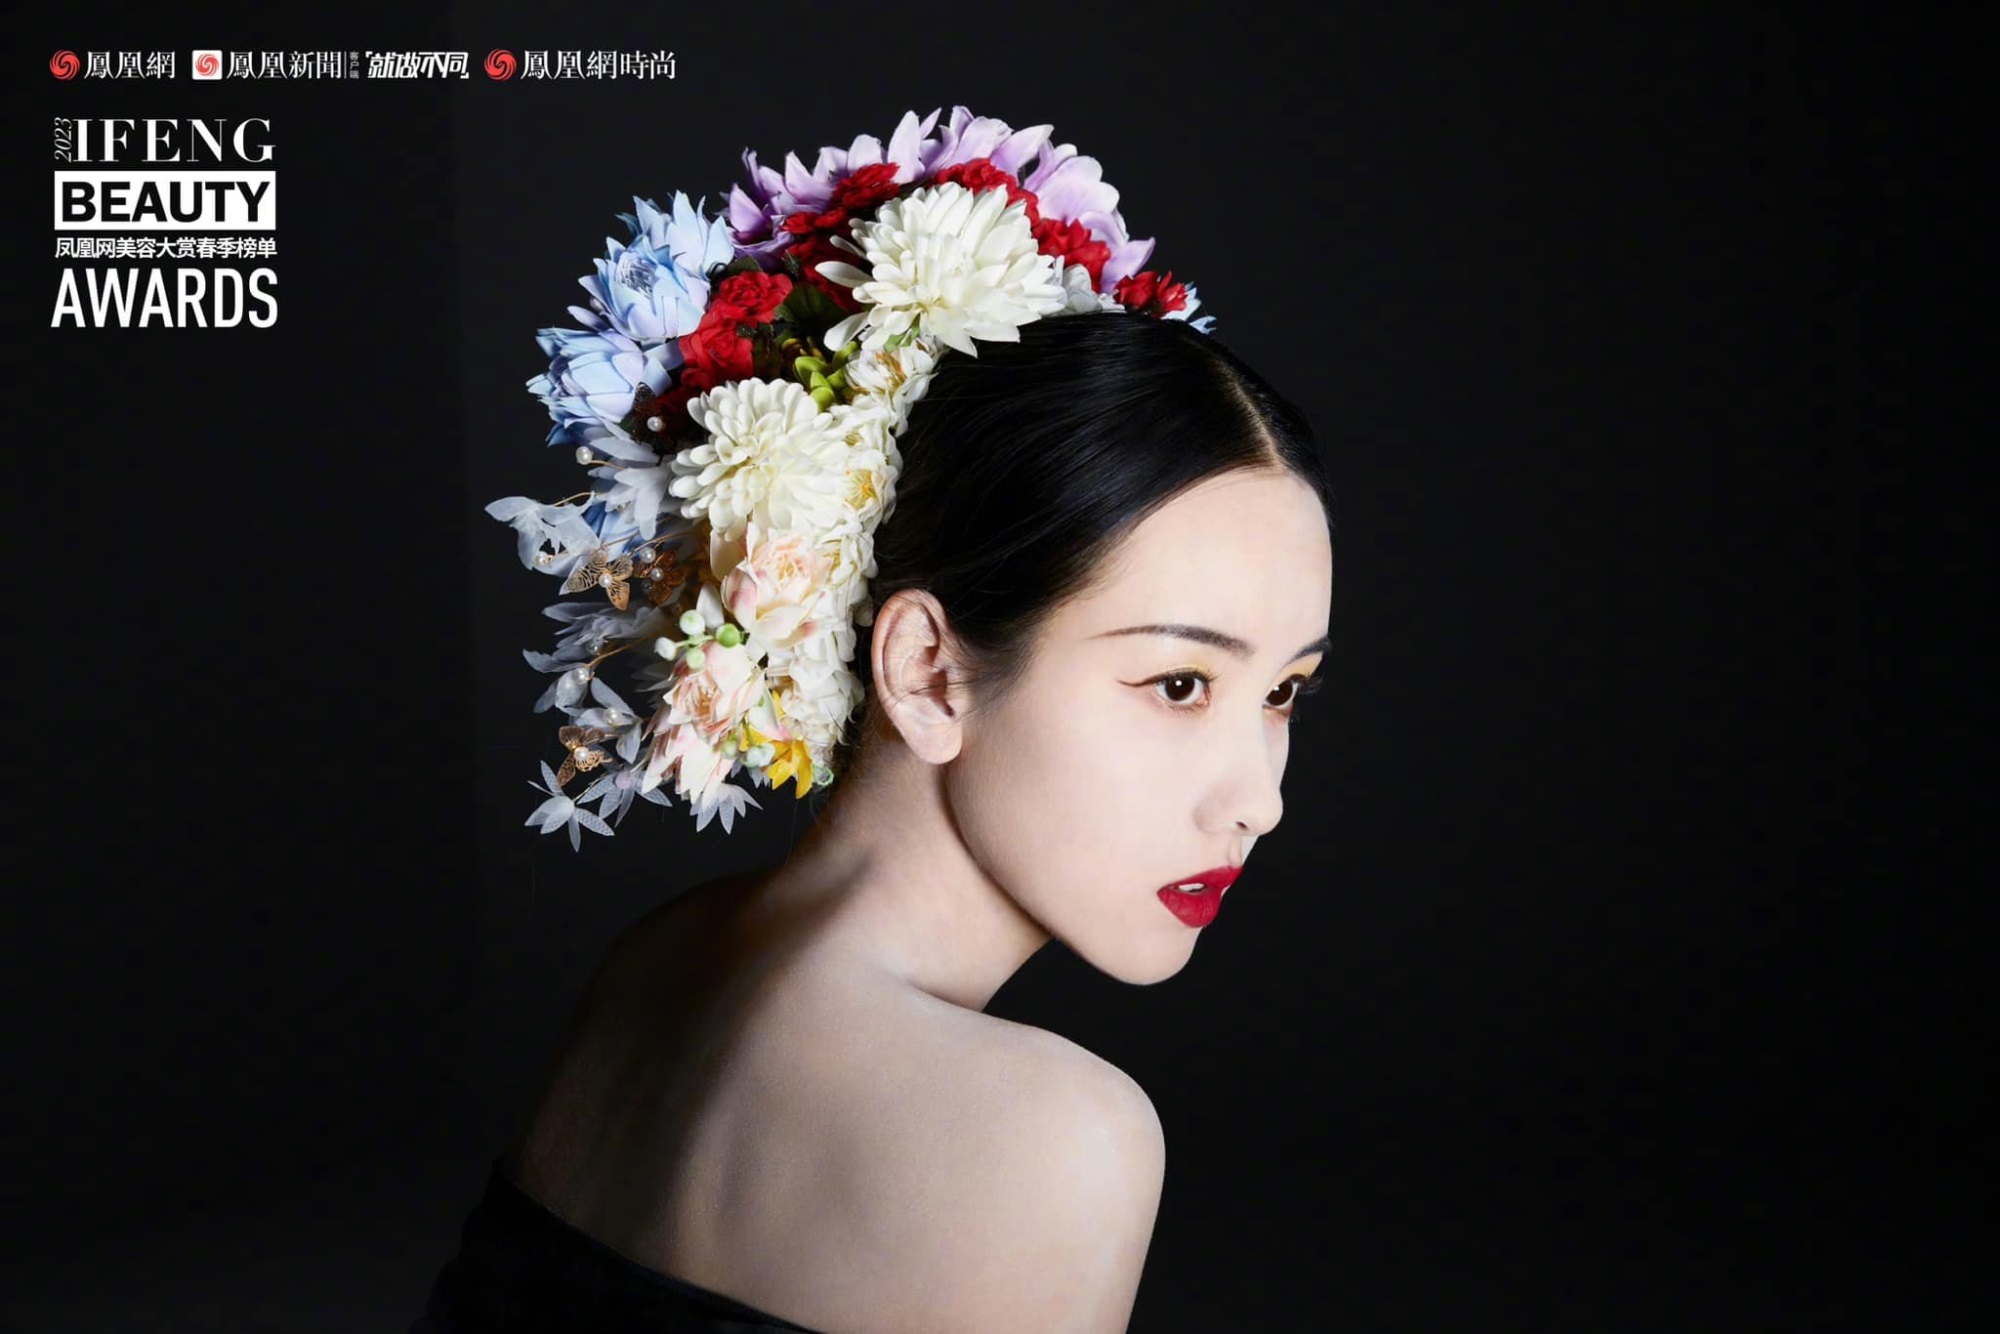 Trần Đô Linh trở thành đại sứ mùa xuân của tạp chí Ifeng Beauty Awards, xinh đẹp 'động lòng người' nhưng không bằng 'đàn chị' Triệu Lệ Dĩnh ở một điểm - Ảnh 6